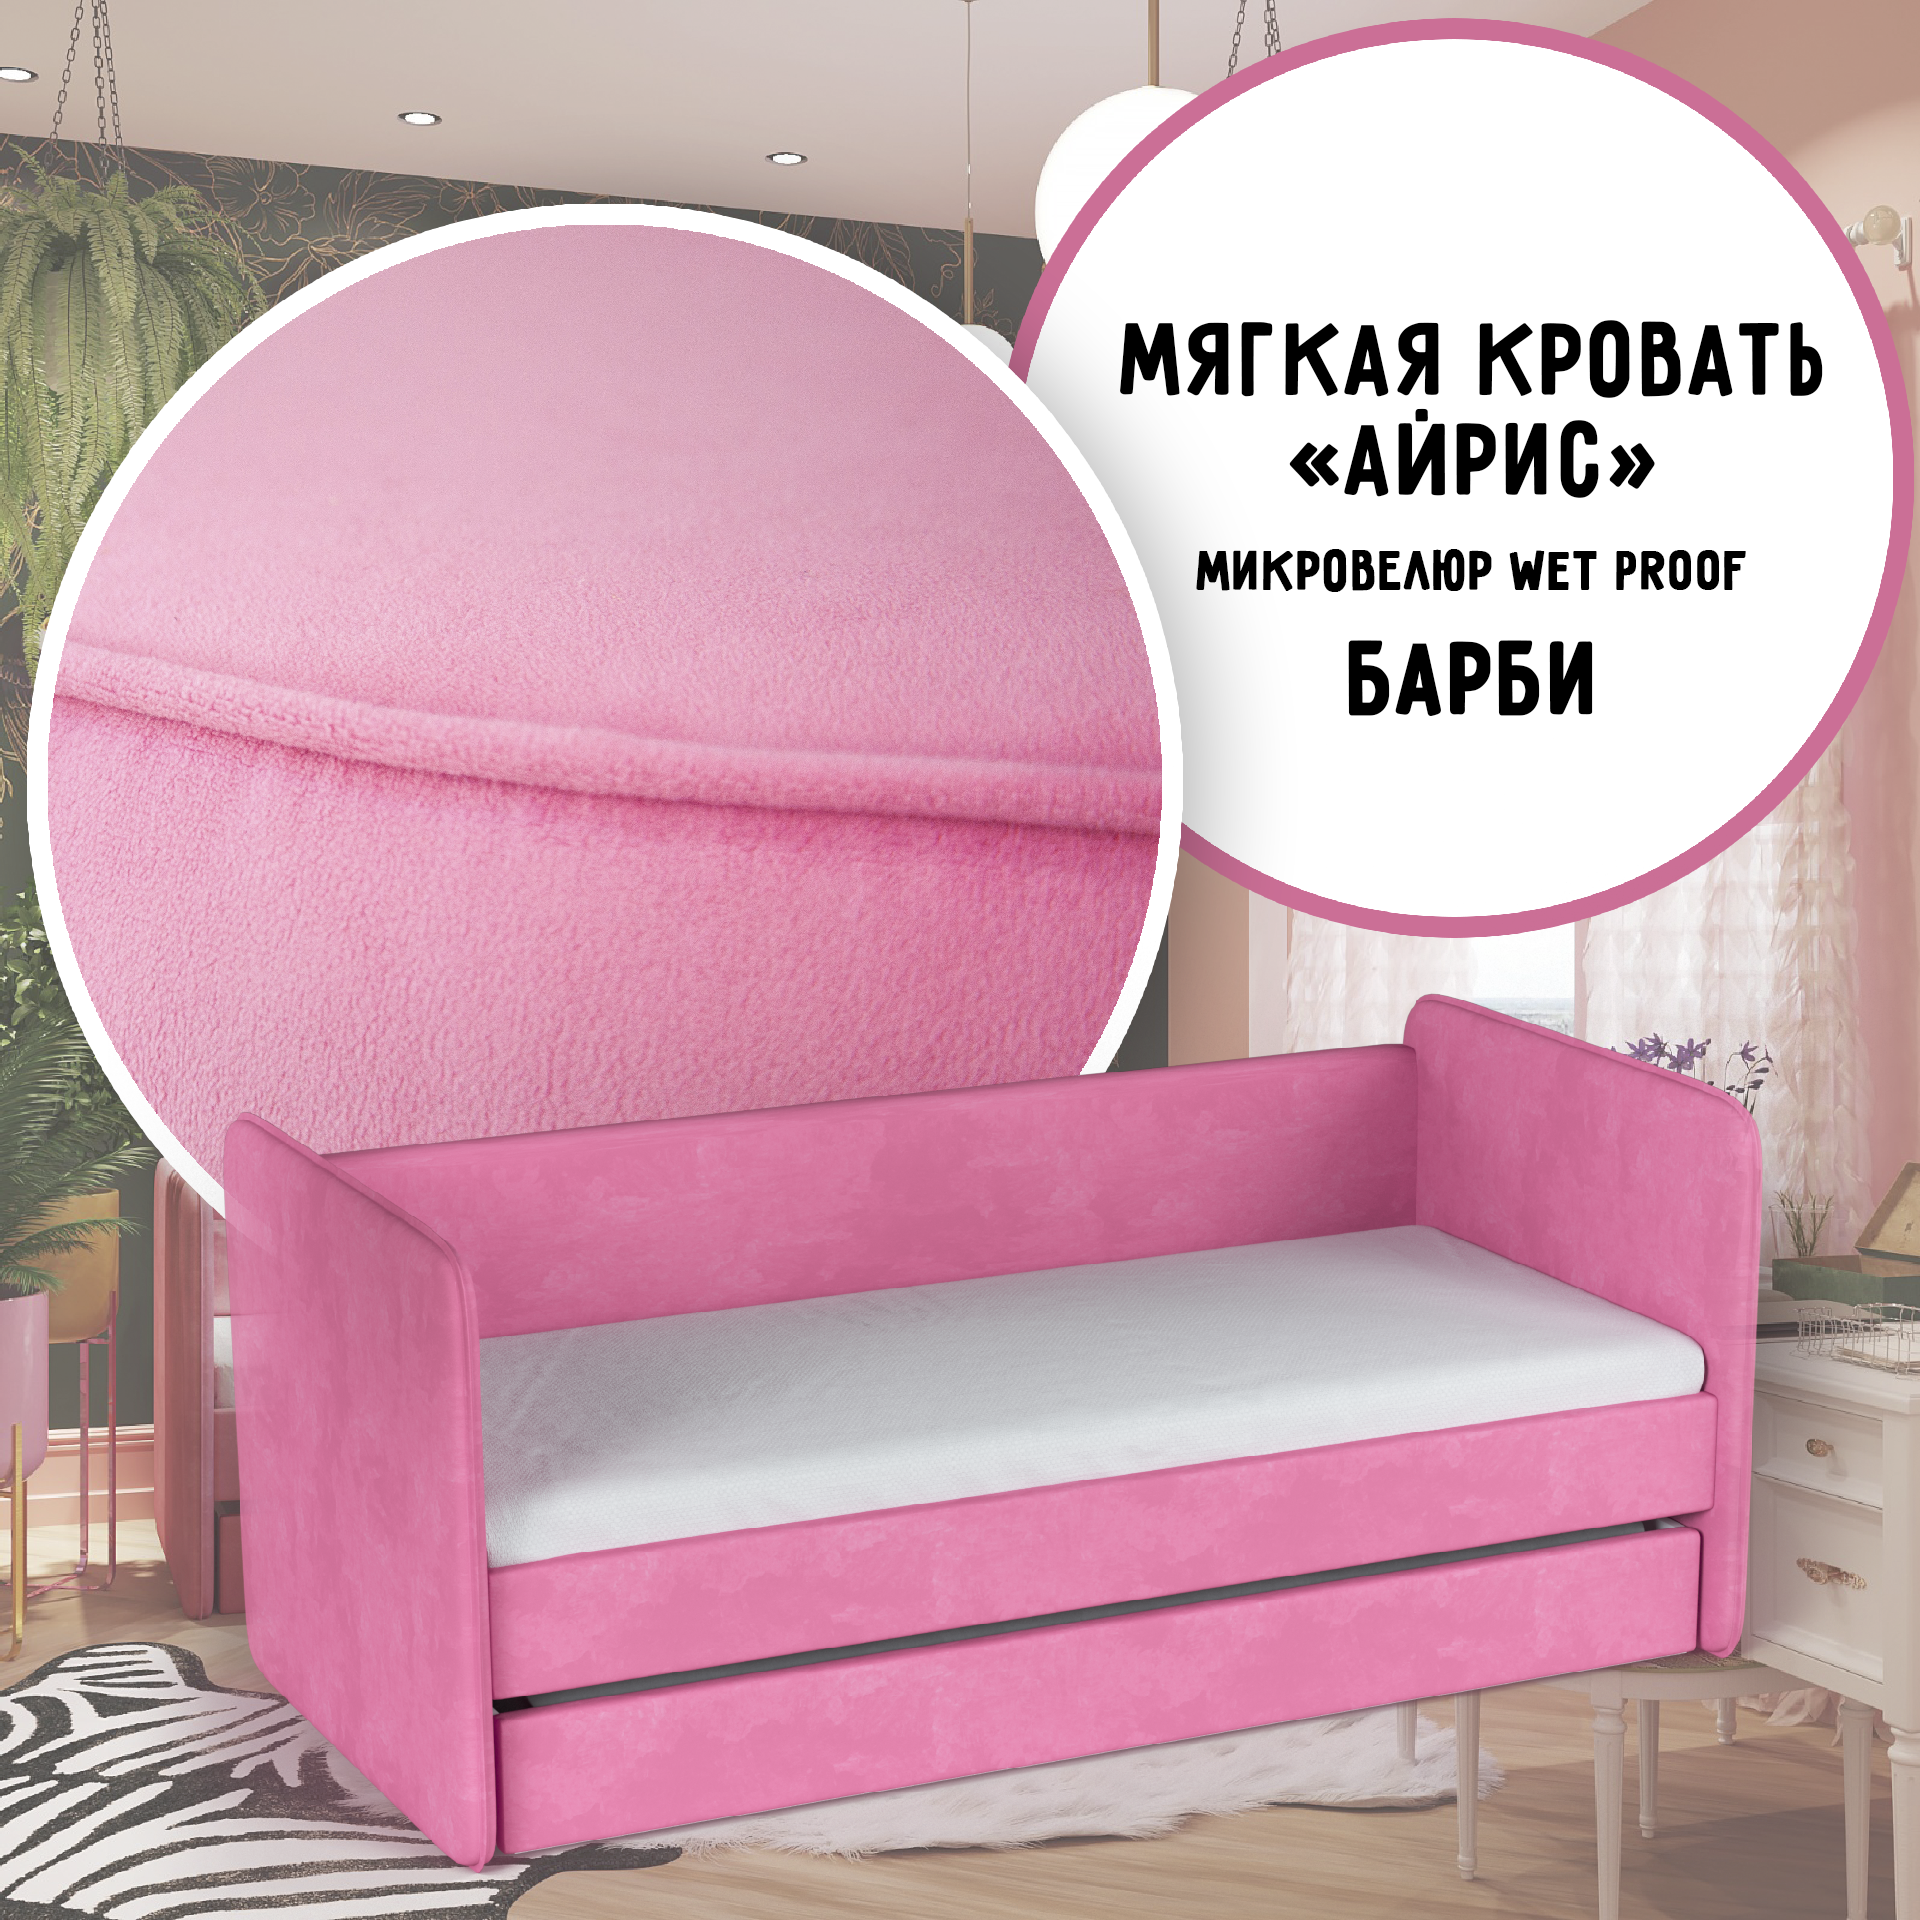 Набор постельного белья и двухъярусная кровать для Барби с выдвижными ящиками купить в Украине